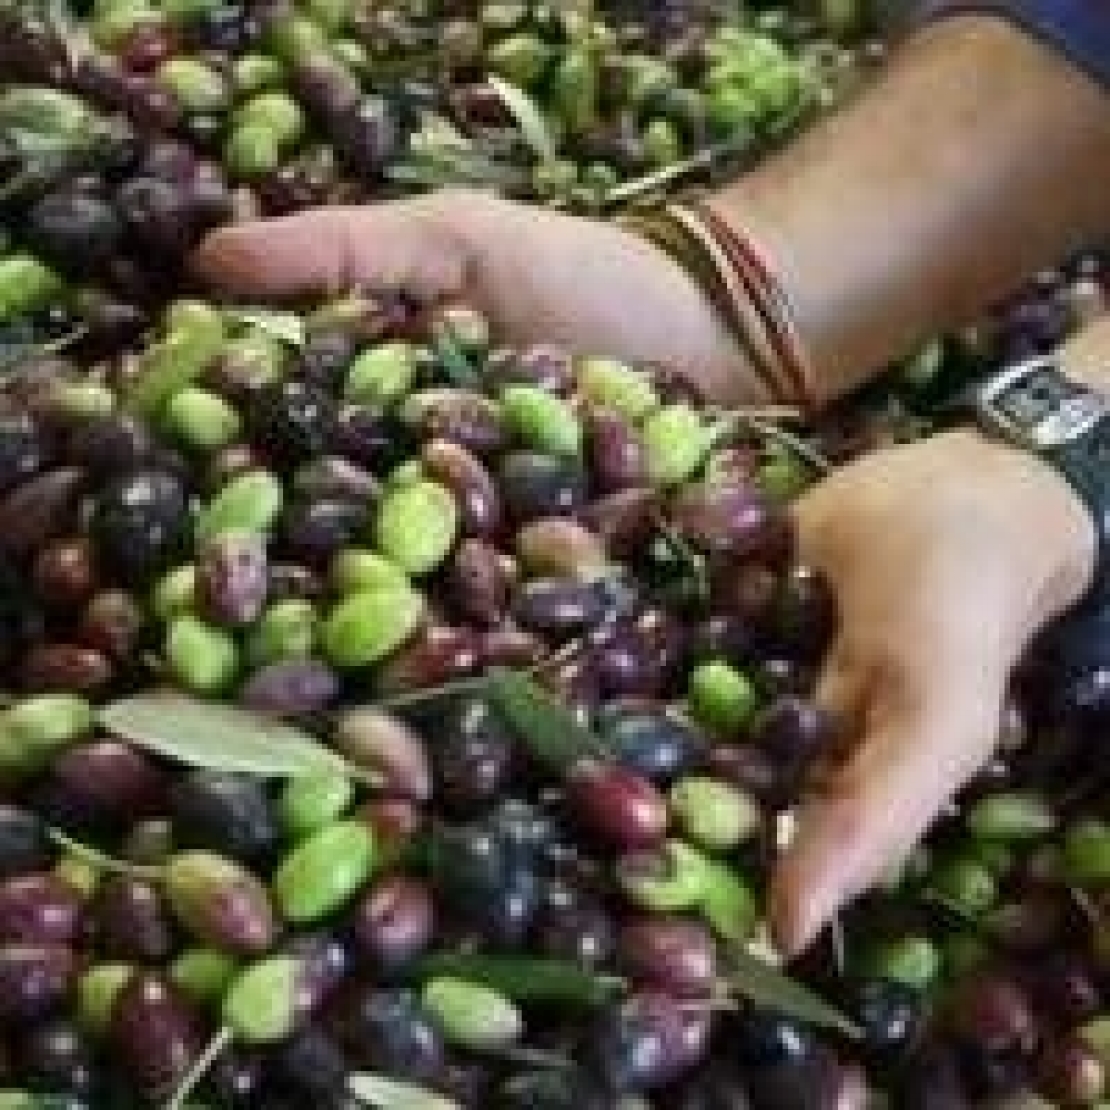 Olio extra vergine di oliva di Puglia: serve più coraggio